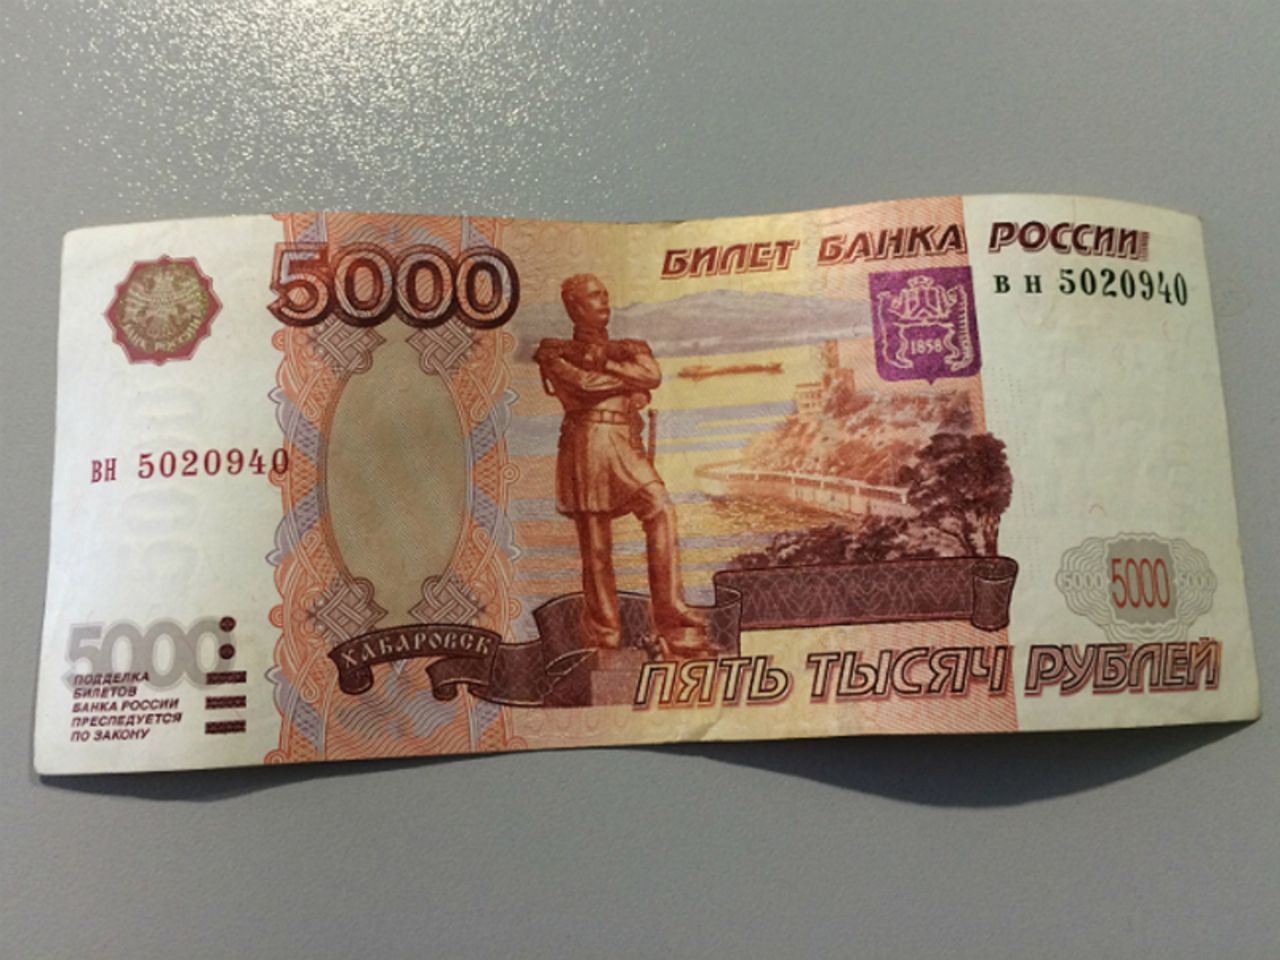 5 тысяч т. 5 Тысяч рублей. Купюра 5000 рублей. Купюра 5 тысяч рублей. Банкнота 5 тысяч рублей.